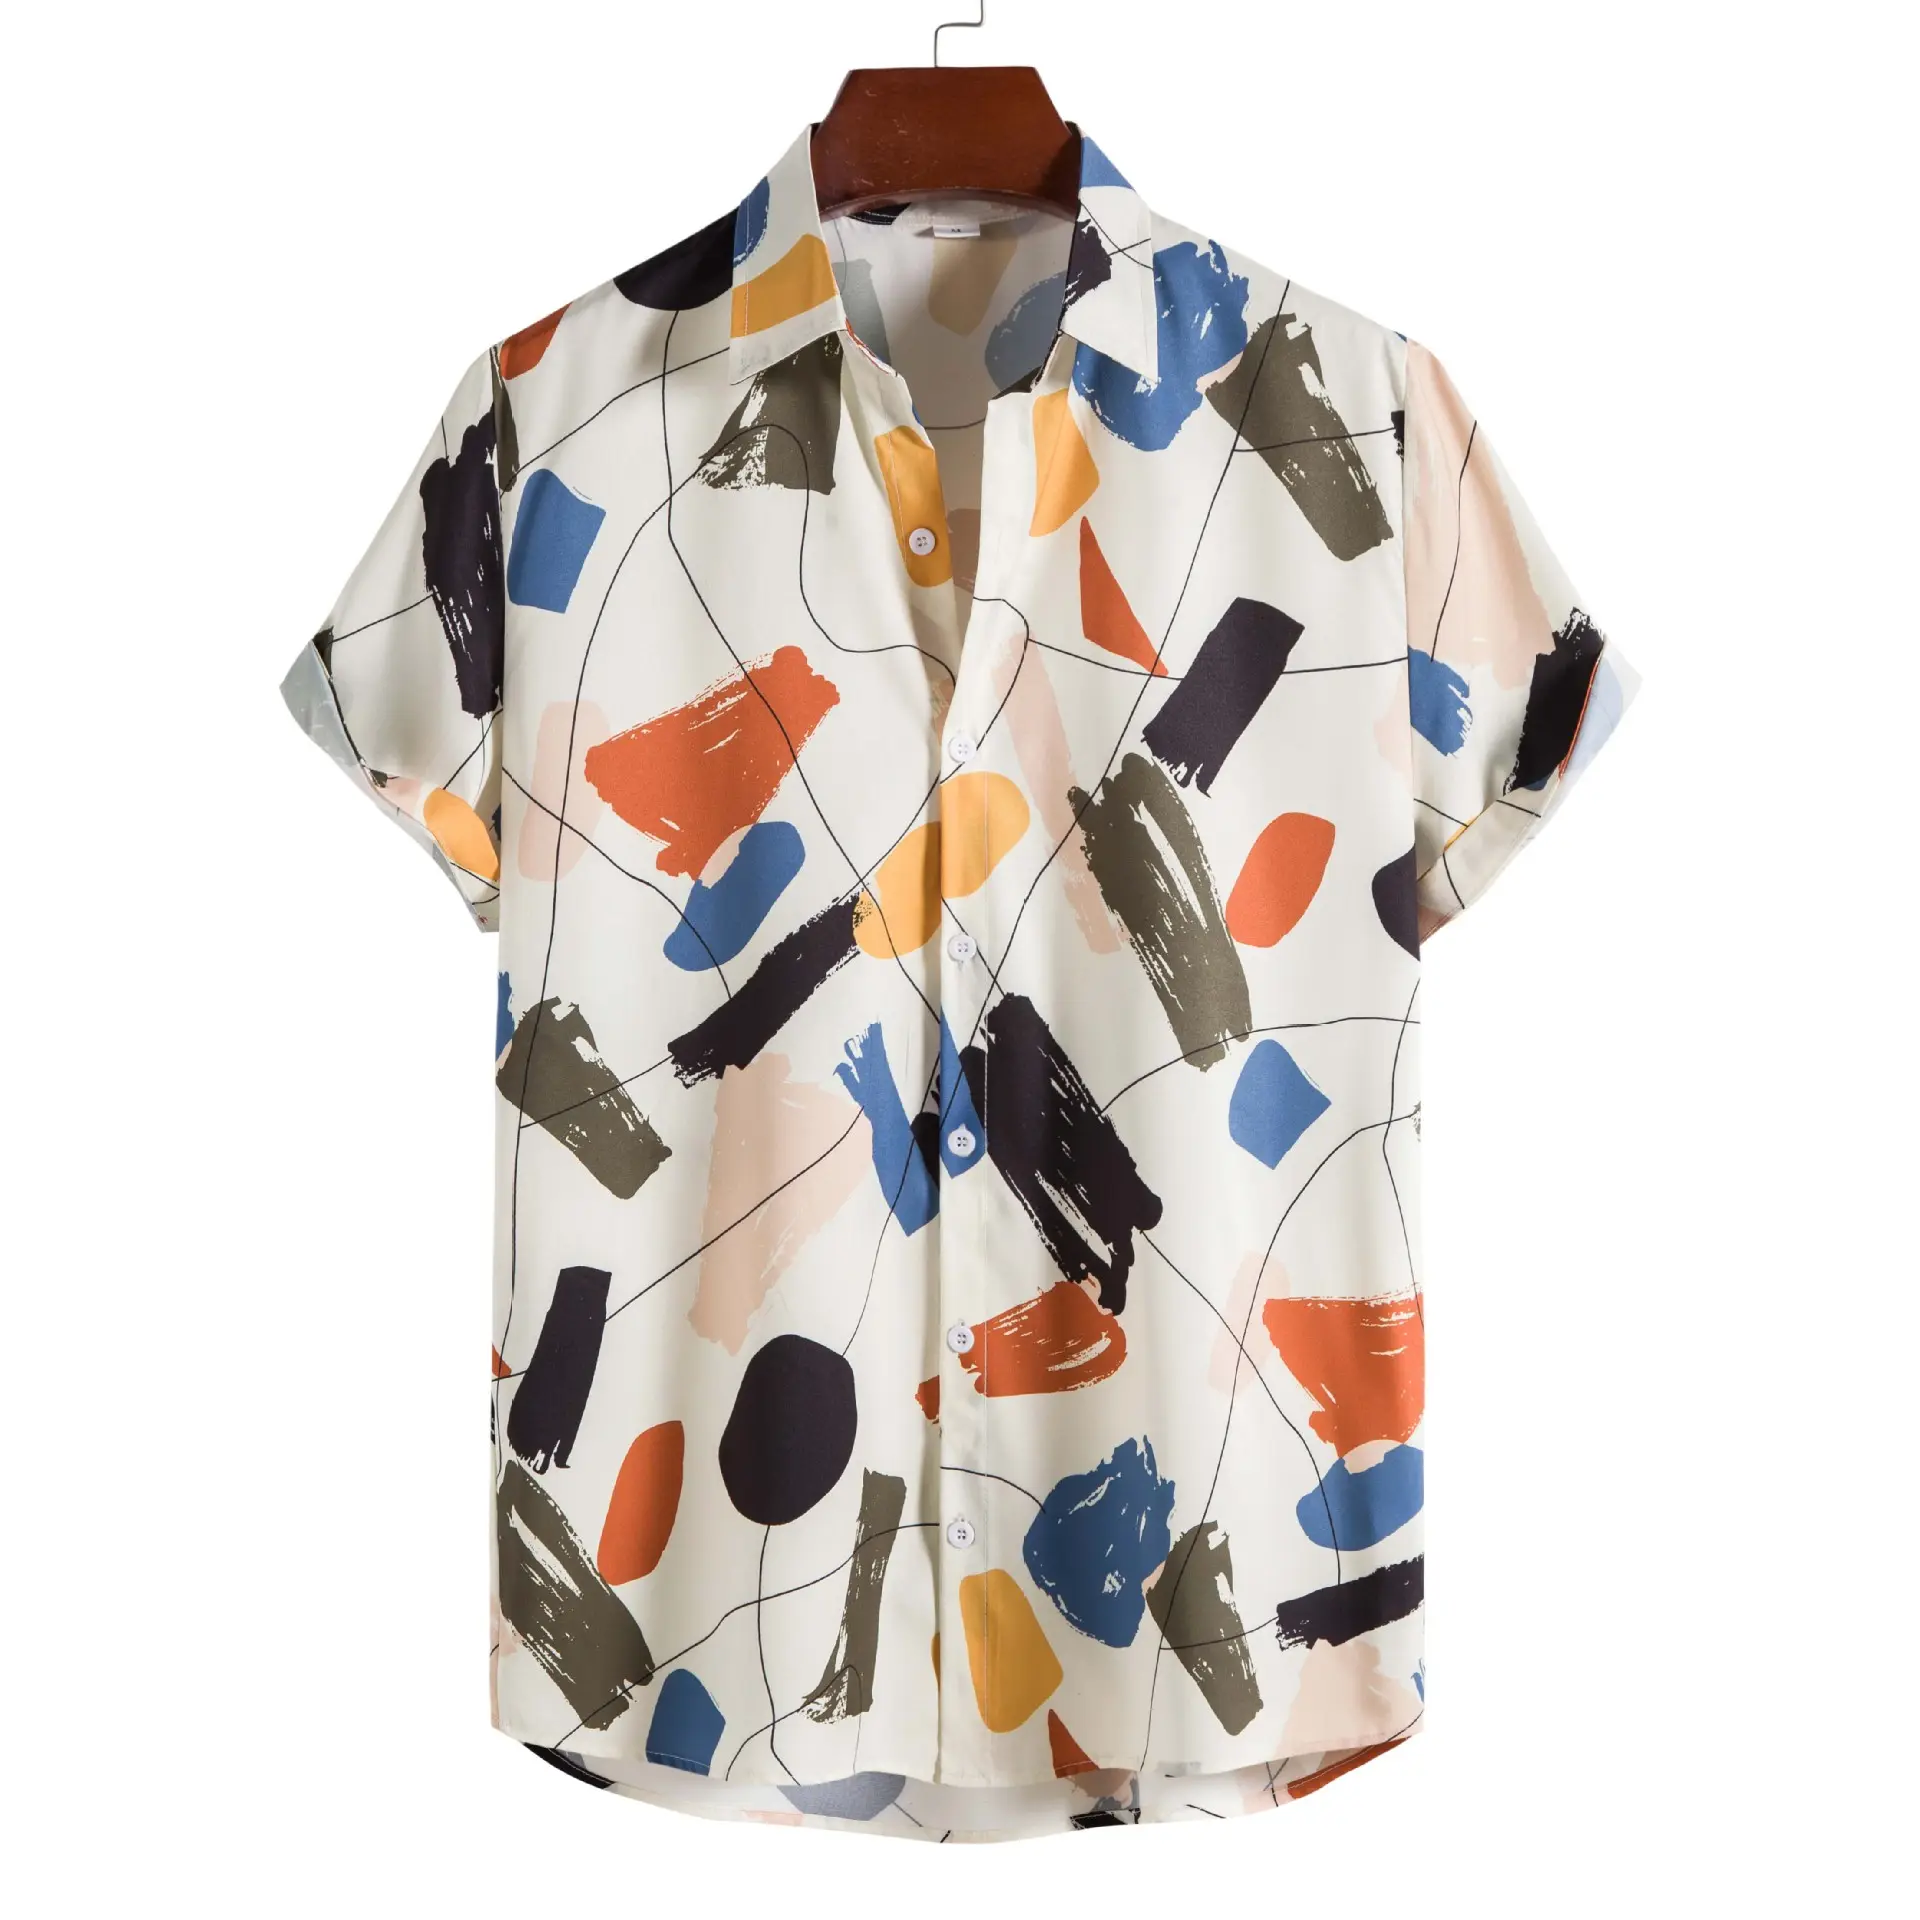 Camisa de algodão para homens casuais Slim Fit estampada com graffiti lapela padrão floral ODM respirável tingido liso